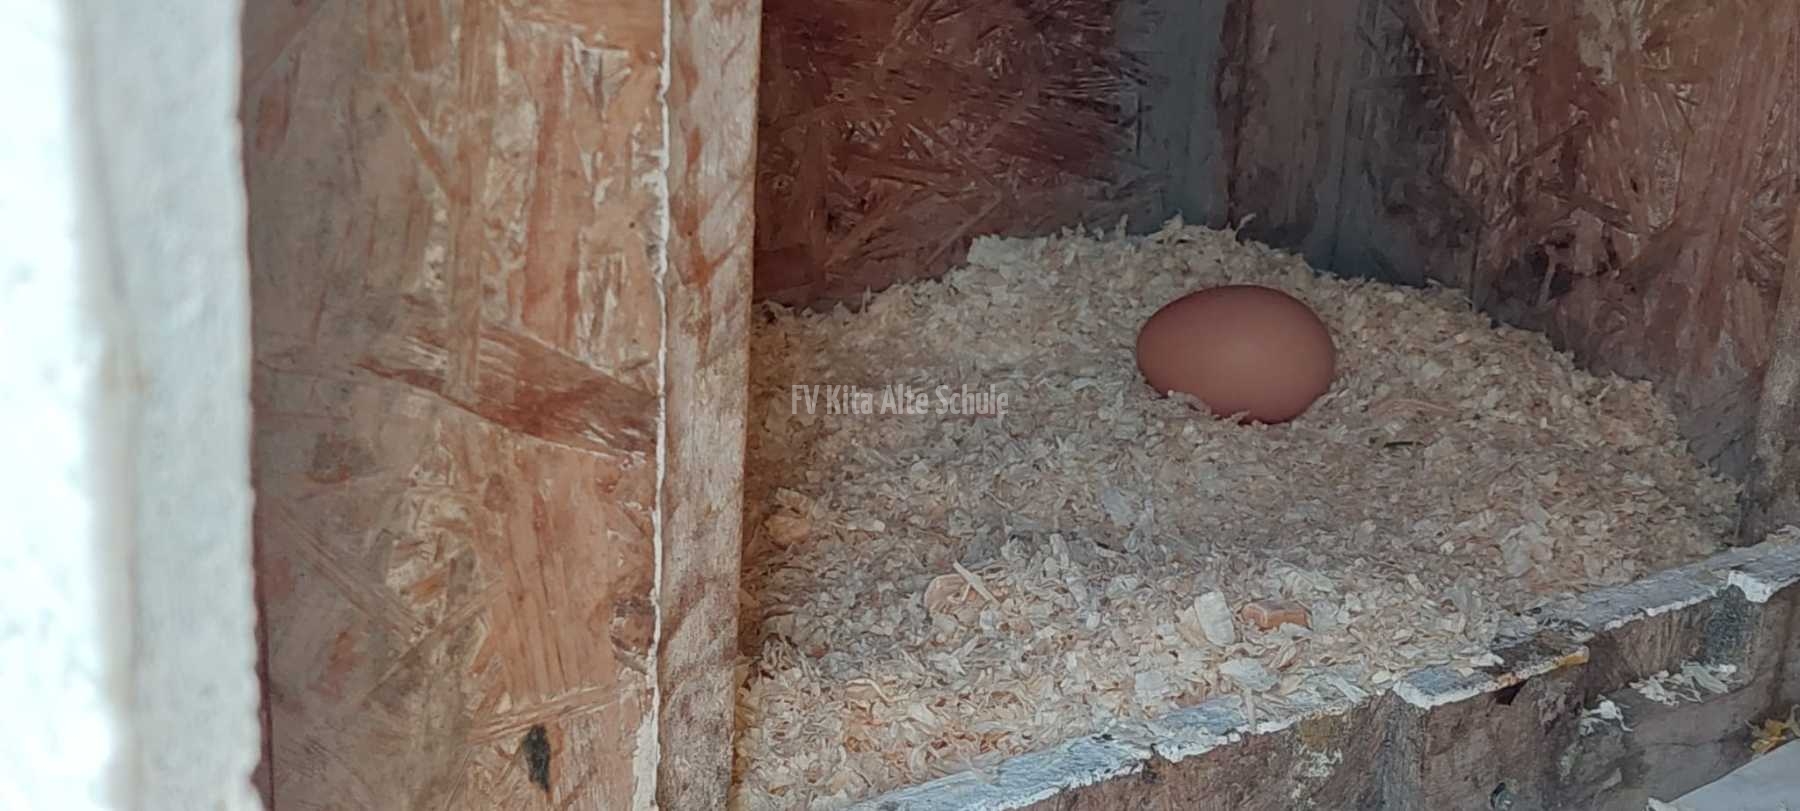 Erst waren die Hühner da, dann das Ei.